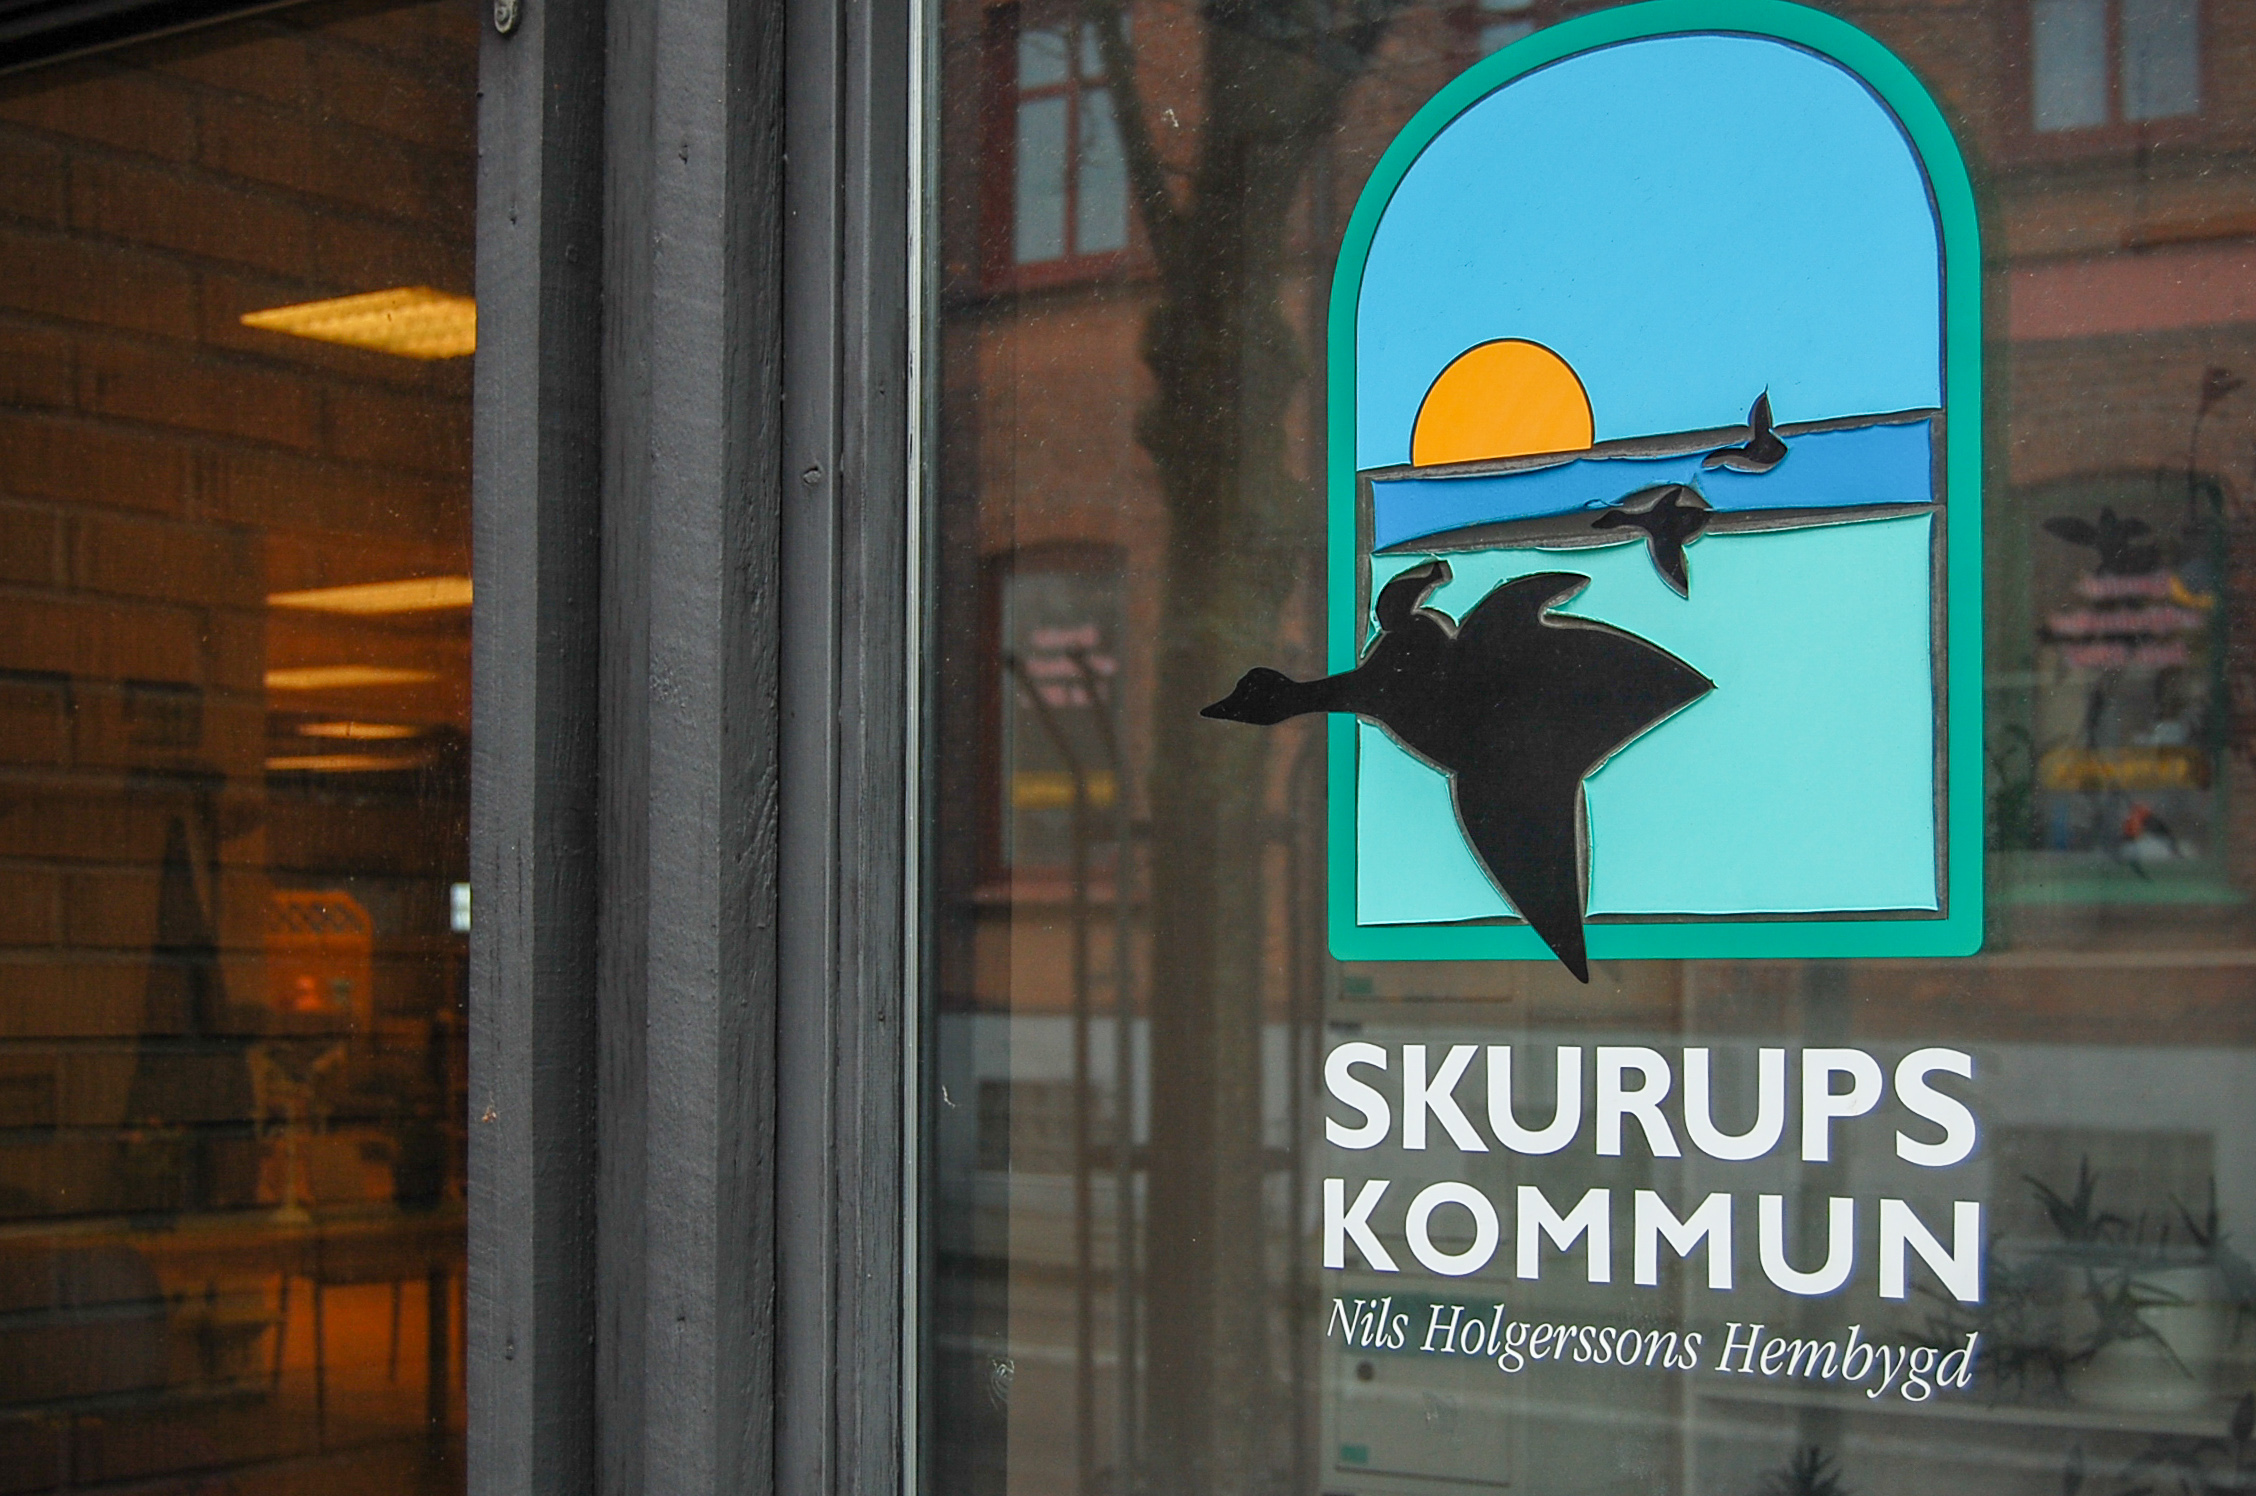 Skurups kommun är bästa skolkommun i sydöstra Skåne, men medelmåtta i länet som helhet. 